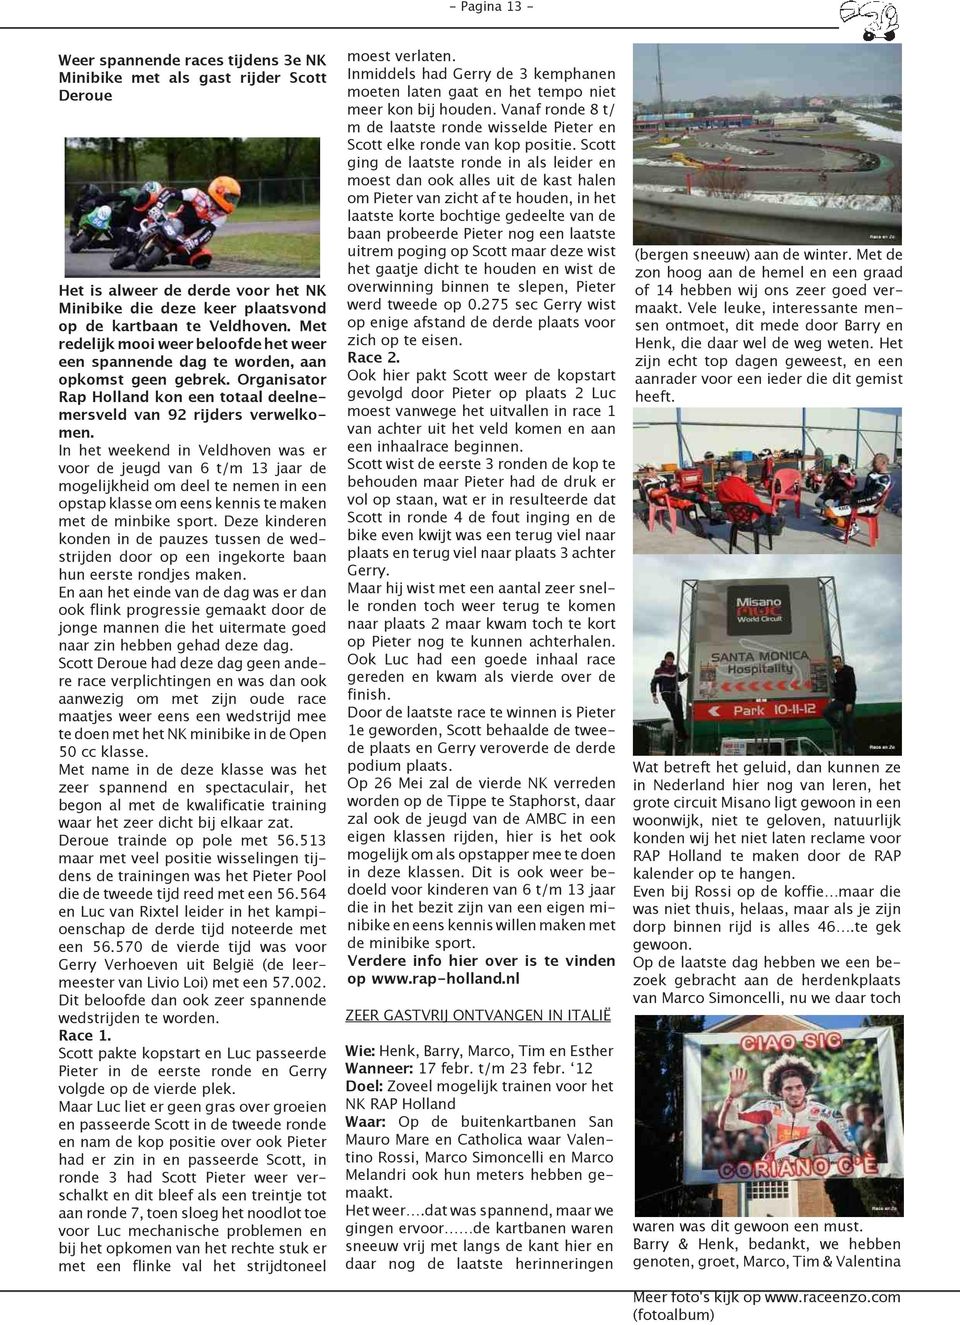 In het weekend in Veldhoven was er voor de jeugd van 6 t/m 13 jaar de mogelijkheid om deel te nemen in een opstap klasse om eens kennis te maken met de minbike sport.